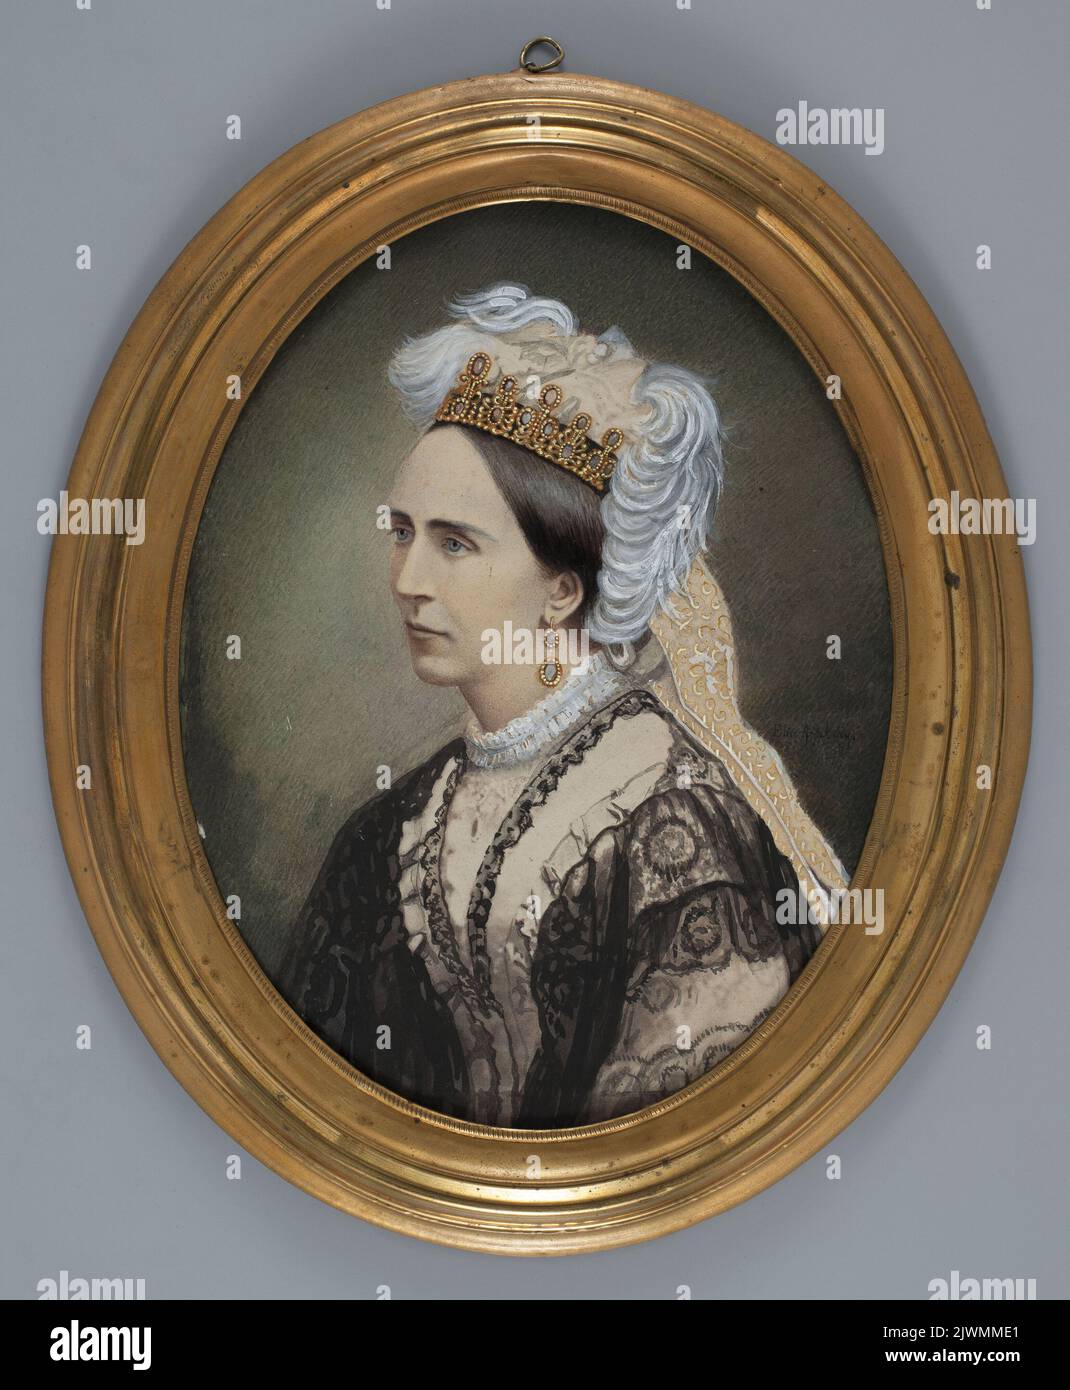 Królowa Maria Józefina de Beauharnais,matka Karola Szwedzkiego XV Bernardotte. Arnberg, Elise (1826-1891), painter Stock Photo